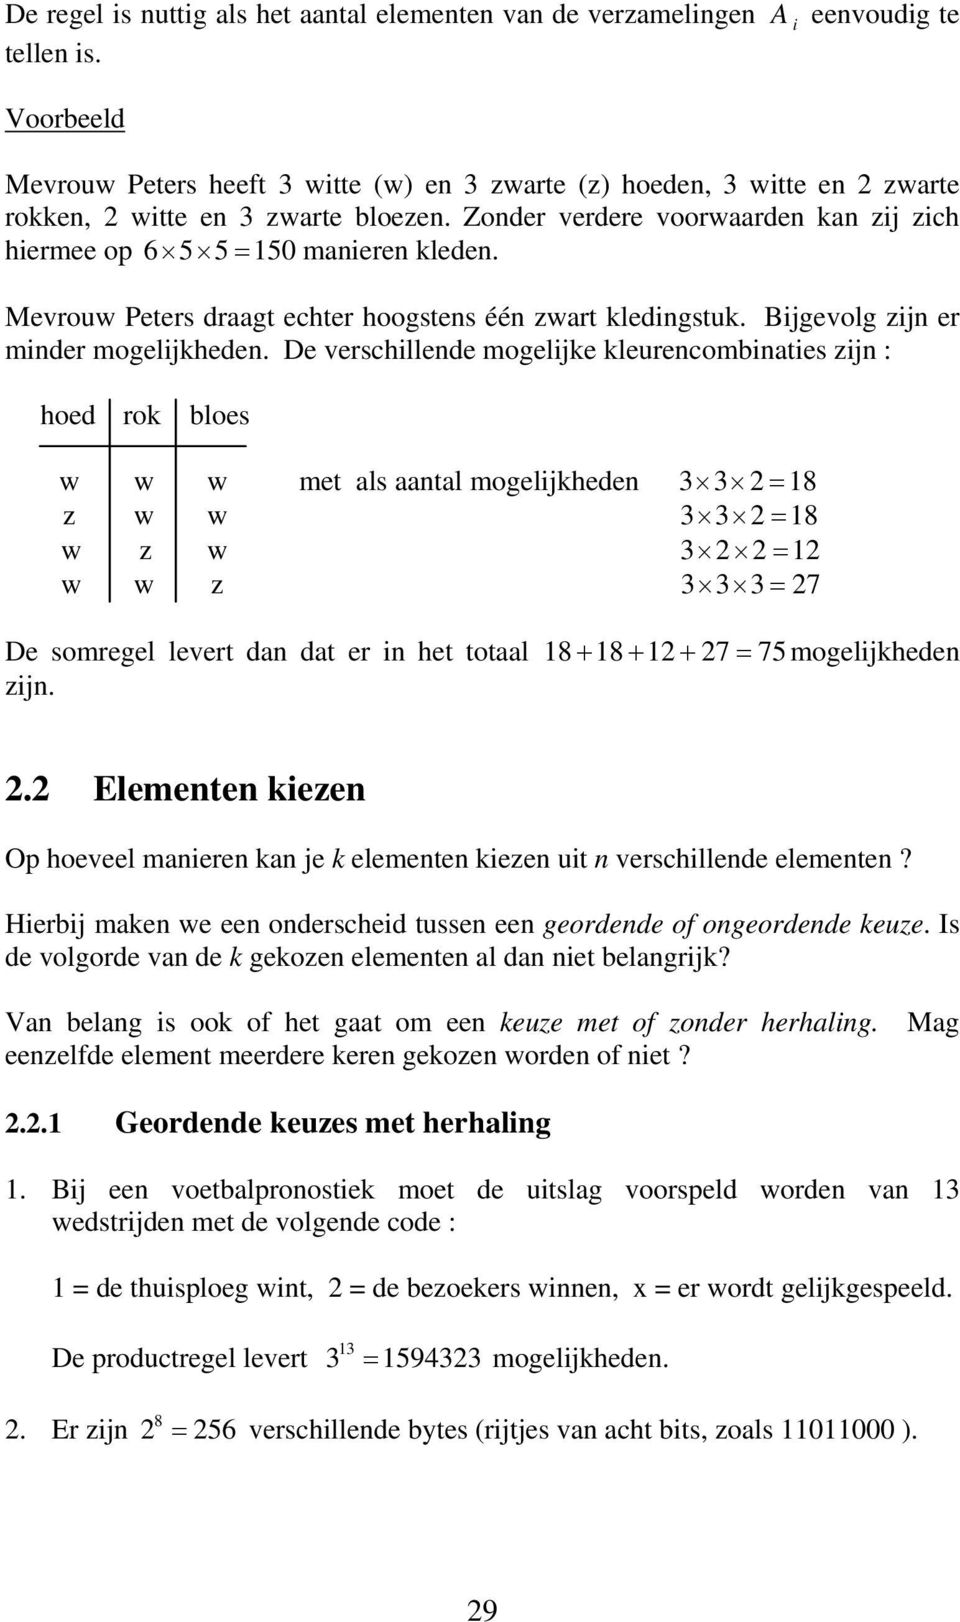 De verschillede mogelije leurecombiaties zij : hoed ro bloes w w w met als aatal mogelijhede 3 3 = 8 z w w 3 3 = 8 w z w 3 = w w z 3 3 3= 7 De somregel levert da dat er i het totaal 8 + 8 + + 7 = 75